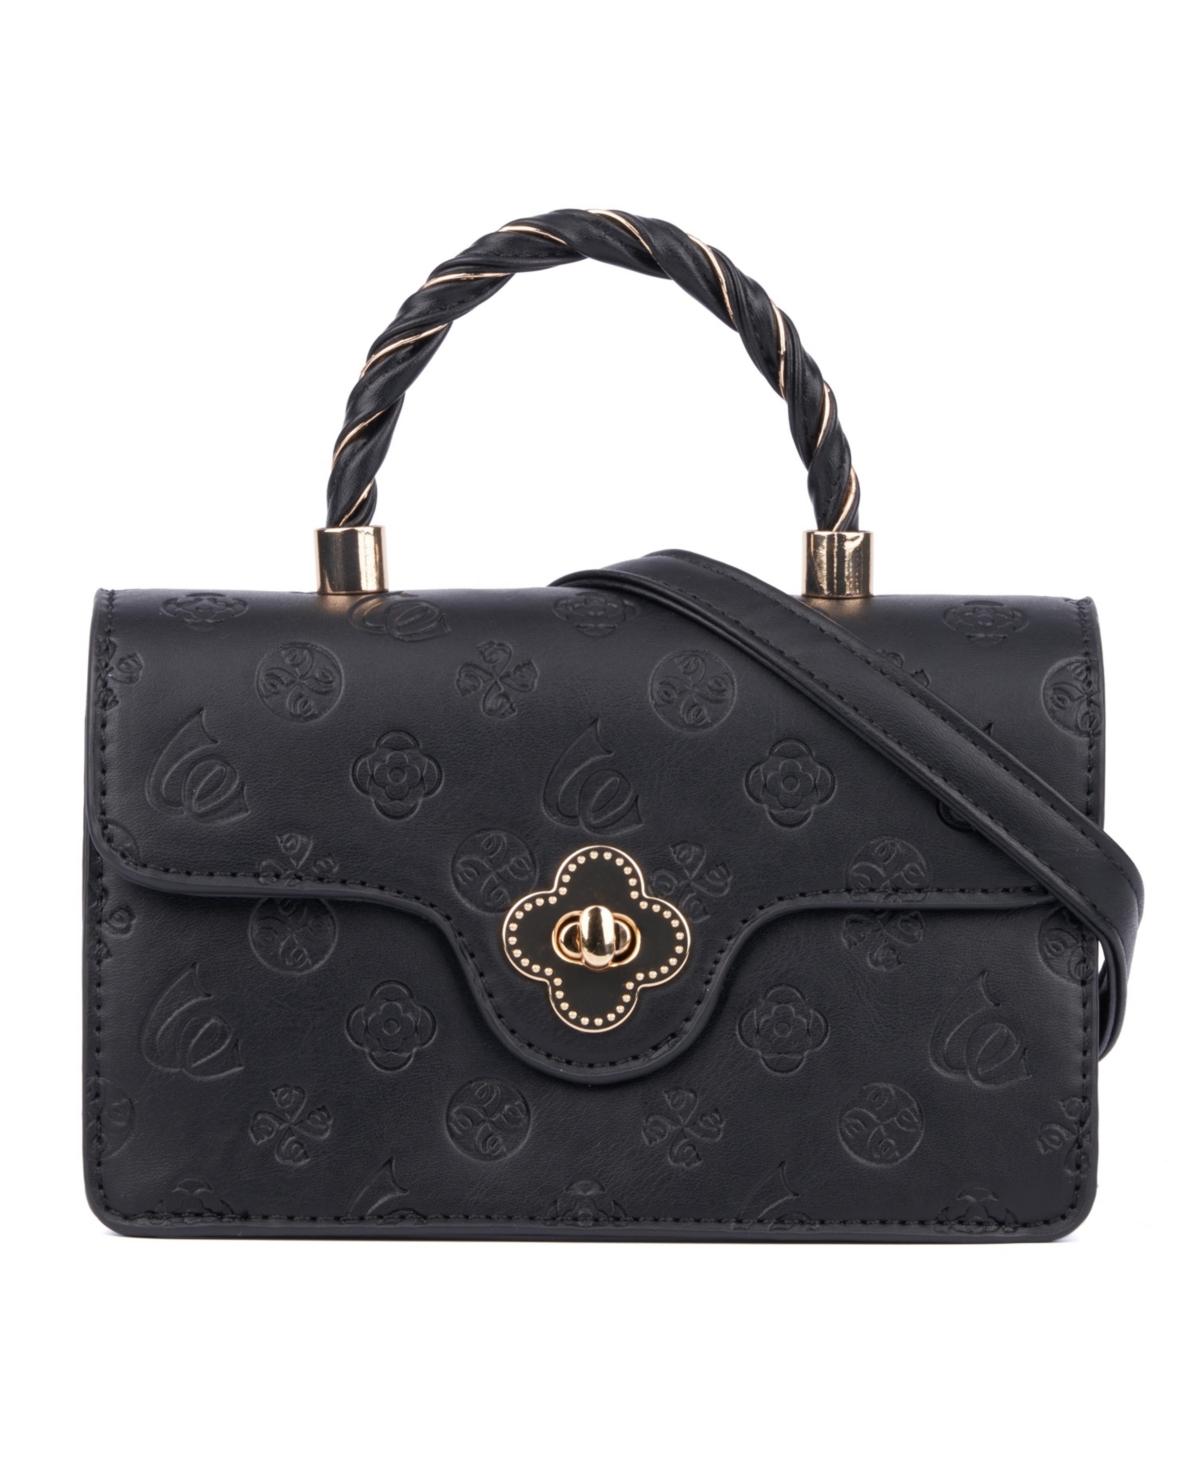 Women's Annet Handbag - Black